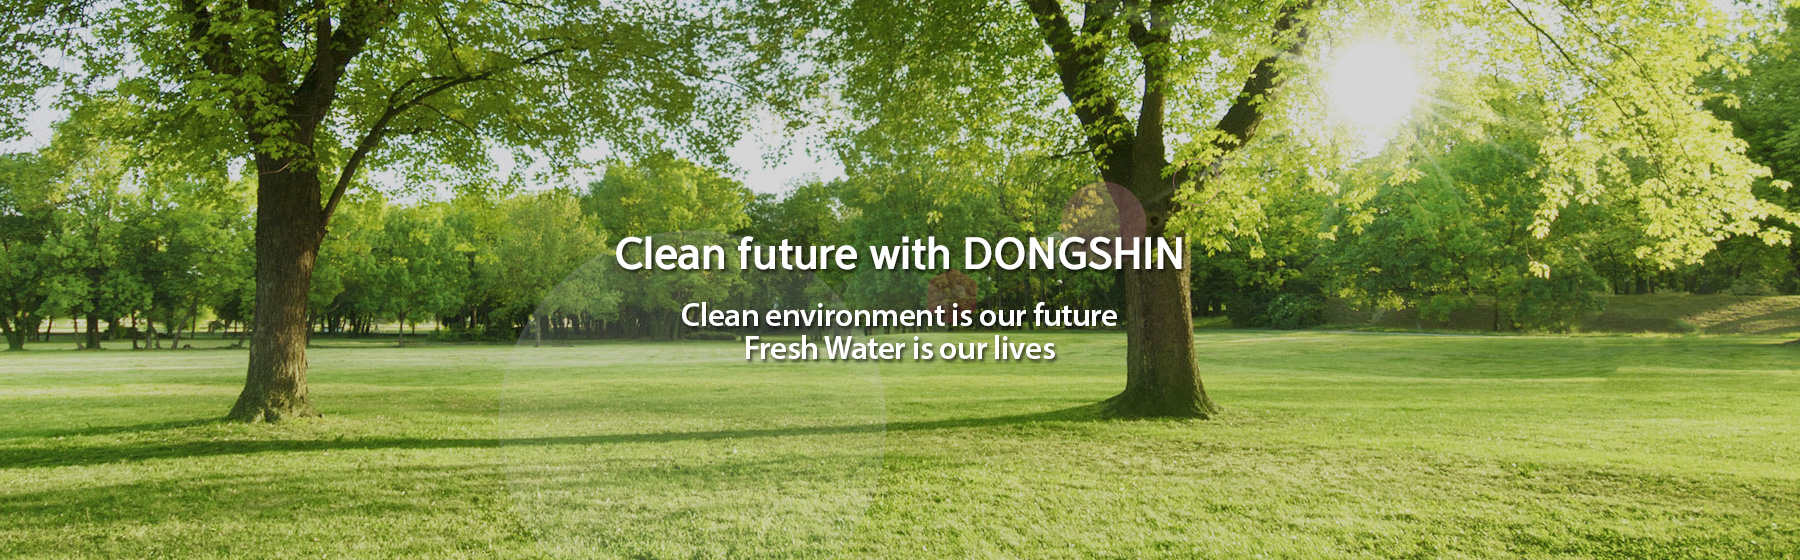 동신과 함께하는 깨끗한 미래 Clean Environment is our future. Fresh Water is our lives